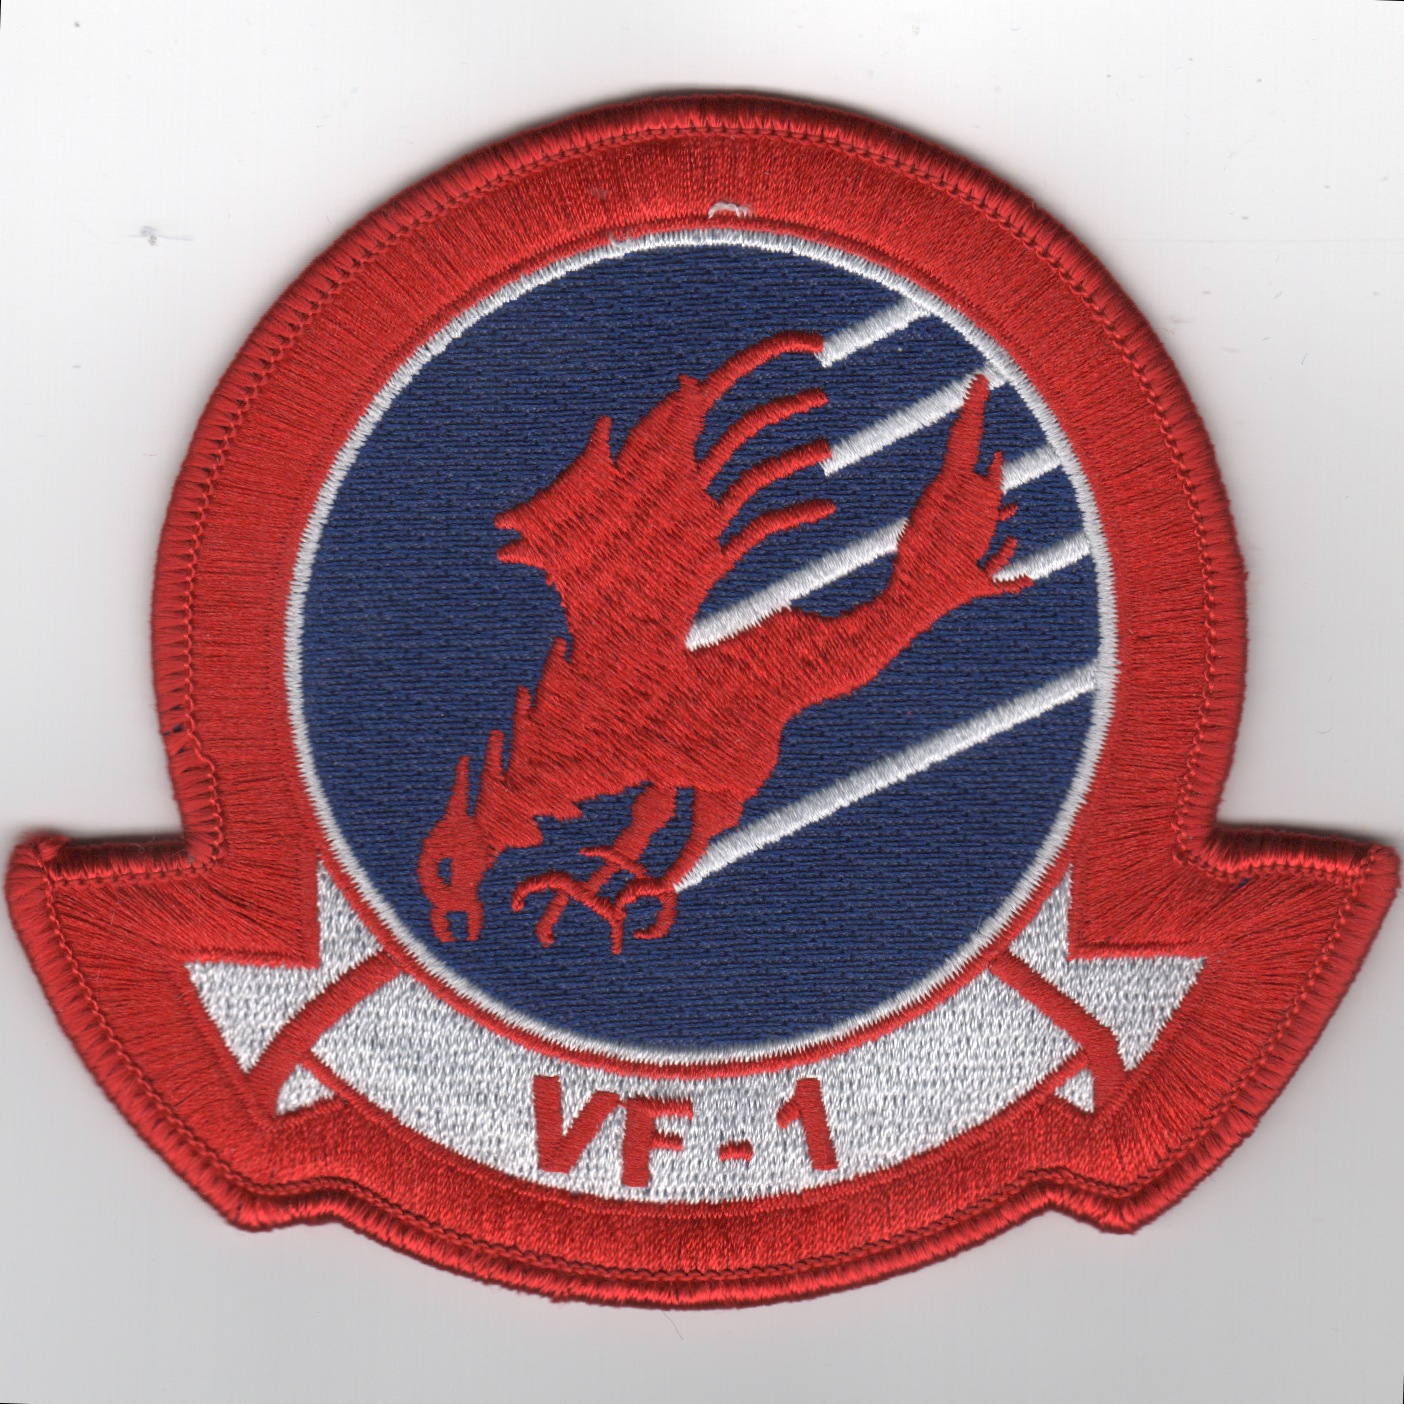 TOPGUN: VF-1 Squadron Patch (No Velcro)